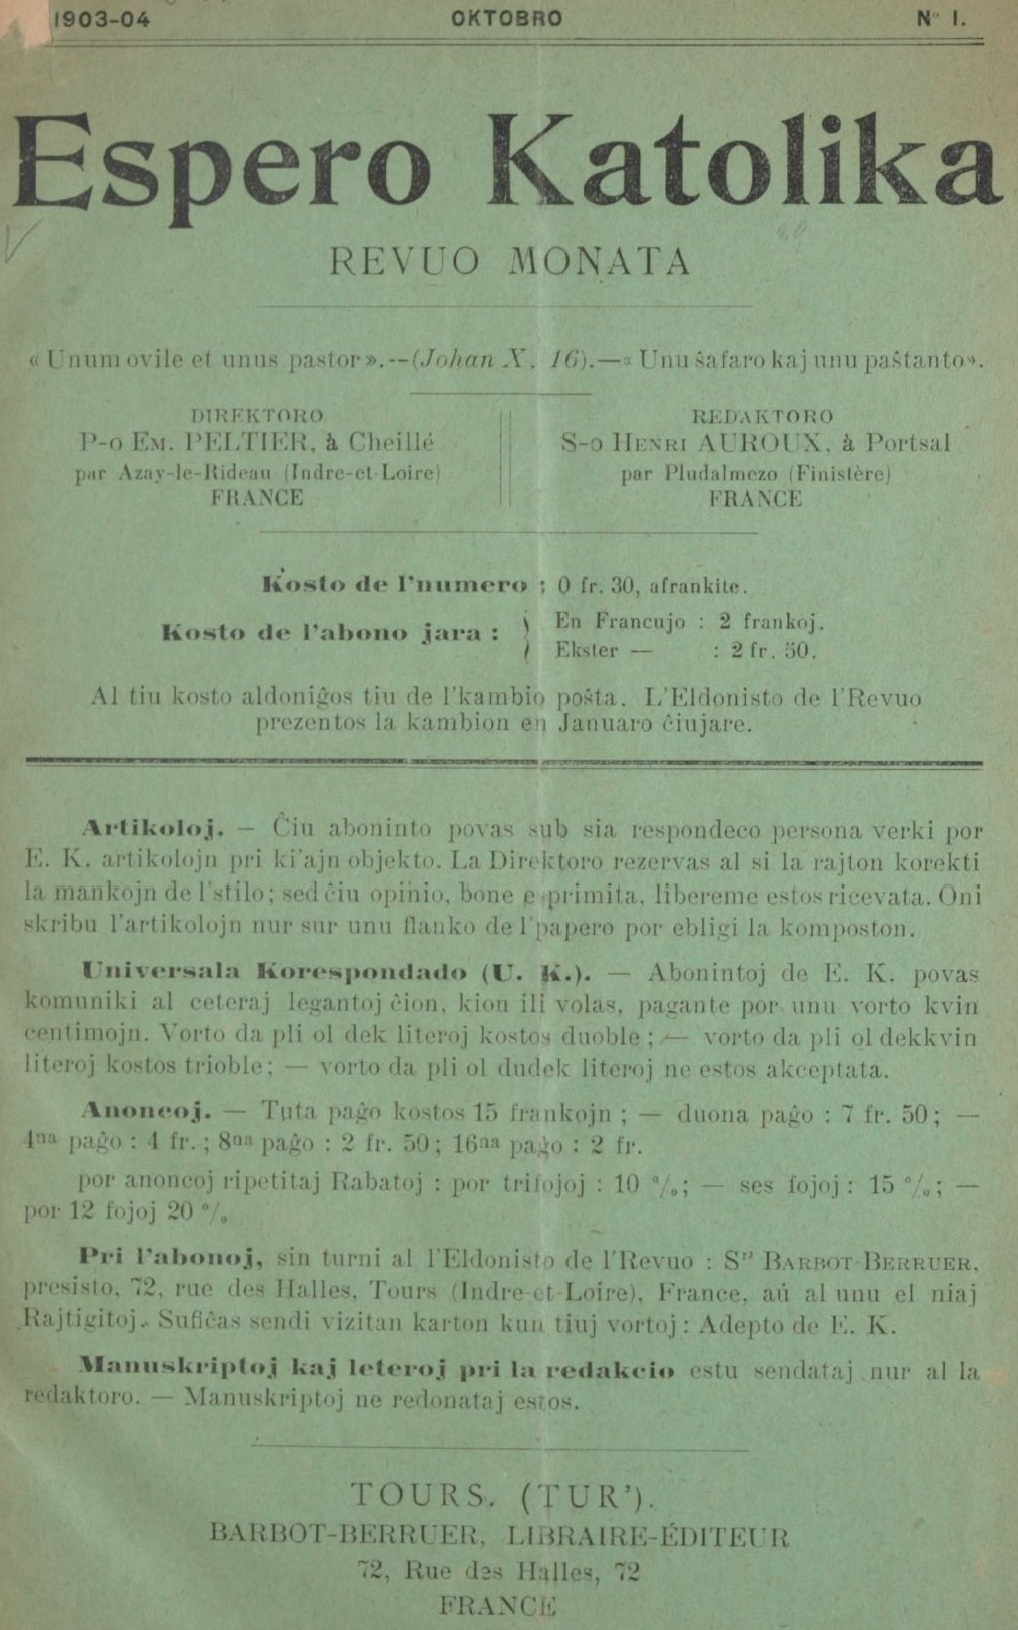 Photo (Österreichische Nationalbibliothek) de : Espero katolika. Tours, Cheillé, par Azay-le-Rideau, Portsal [Portsall], par Pludalmezo [Ploudalmézeau] (Finistère), 1903-. ISSN 2072-5825.